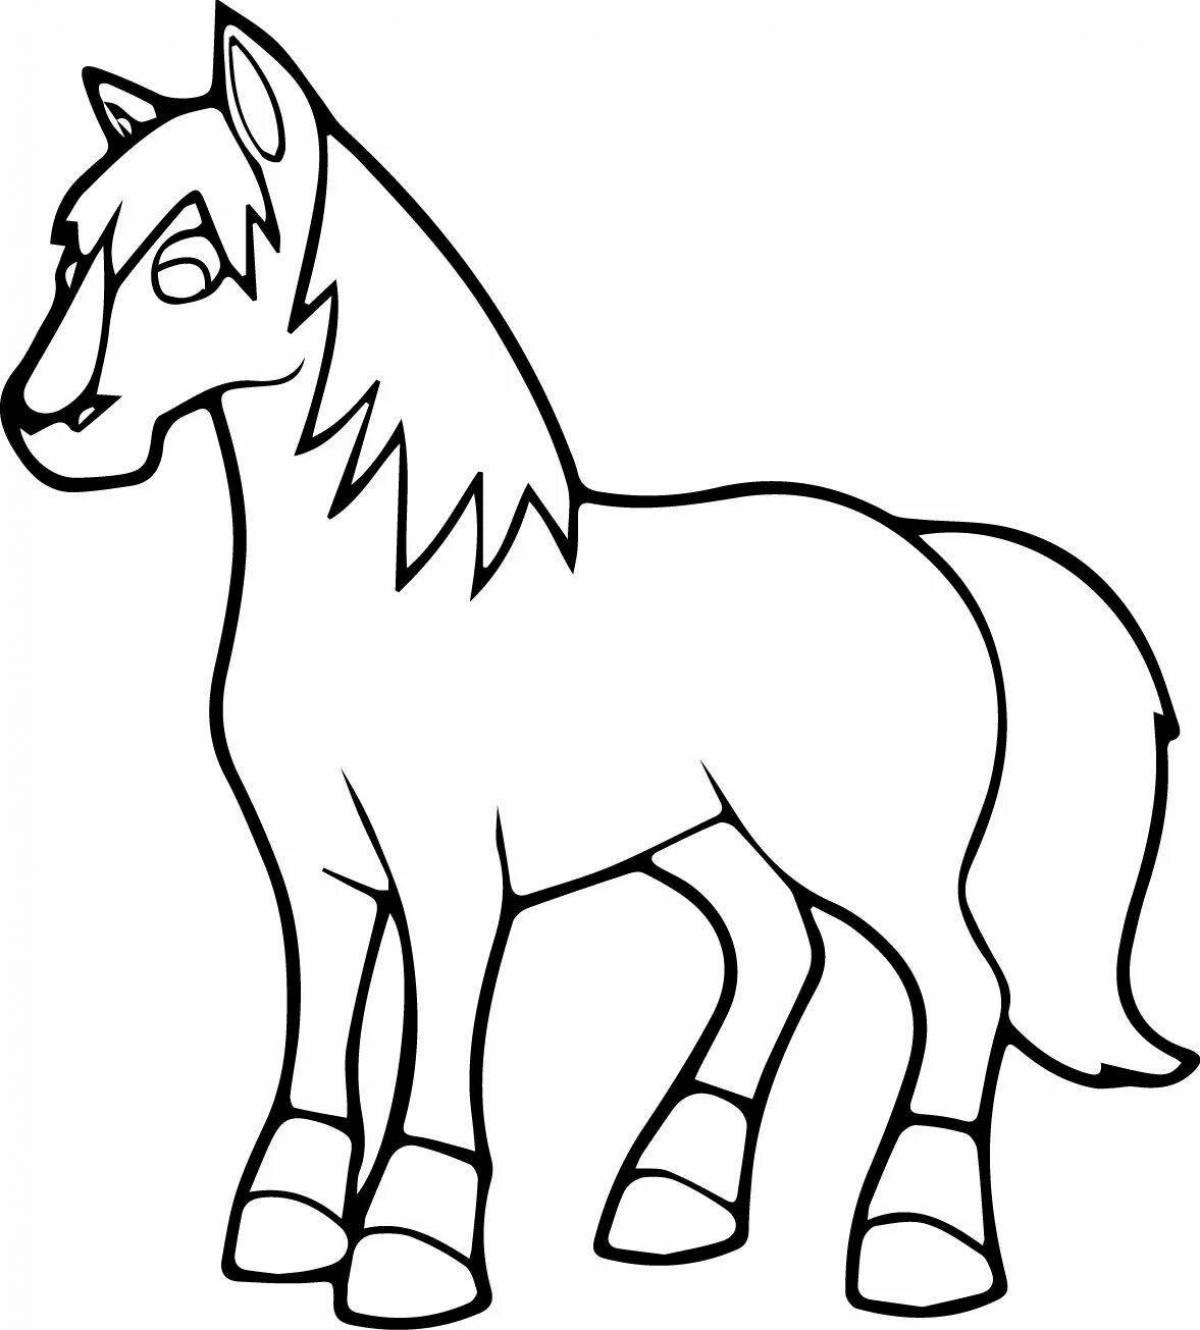 Яркая раскраска лошадь для детей 2-3 лет